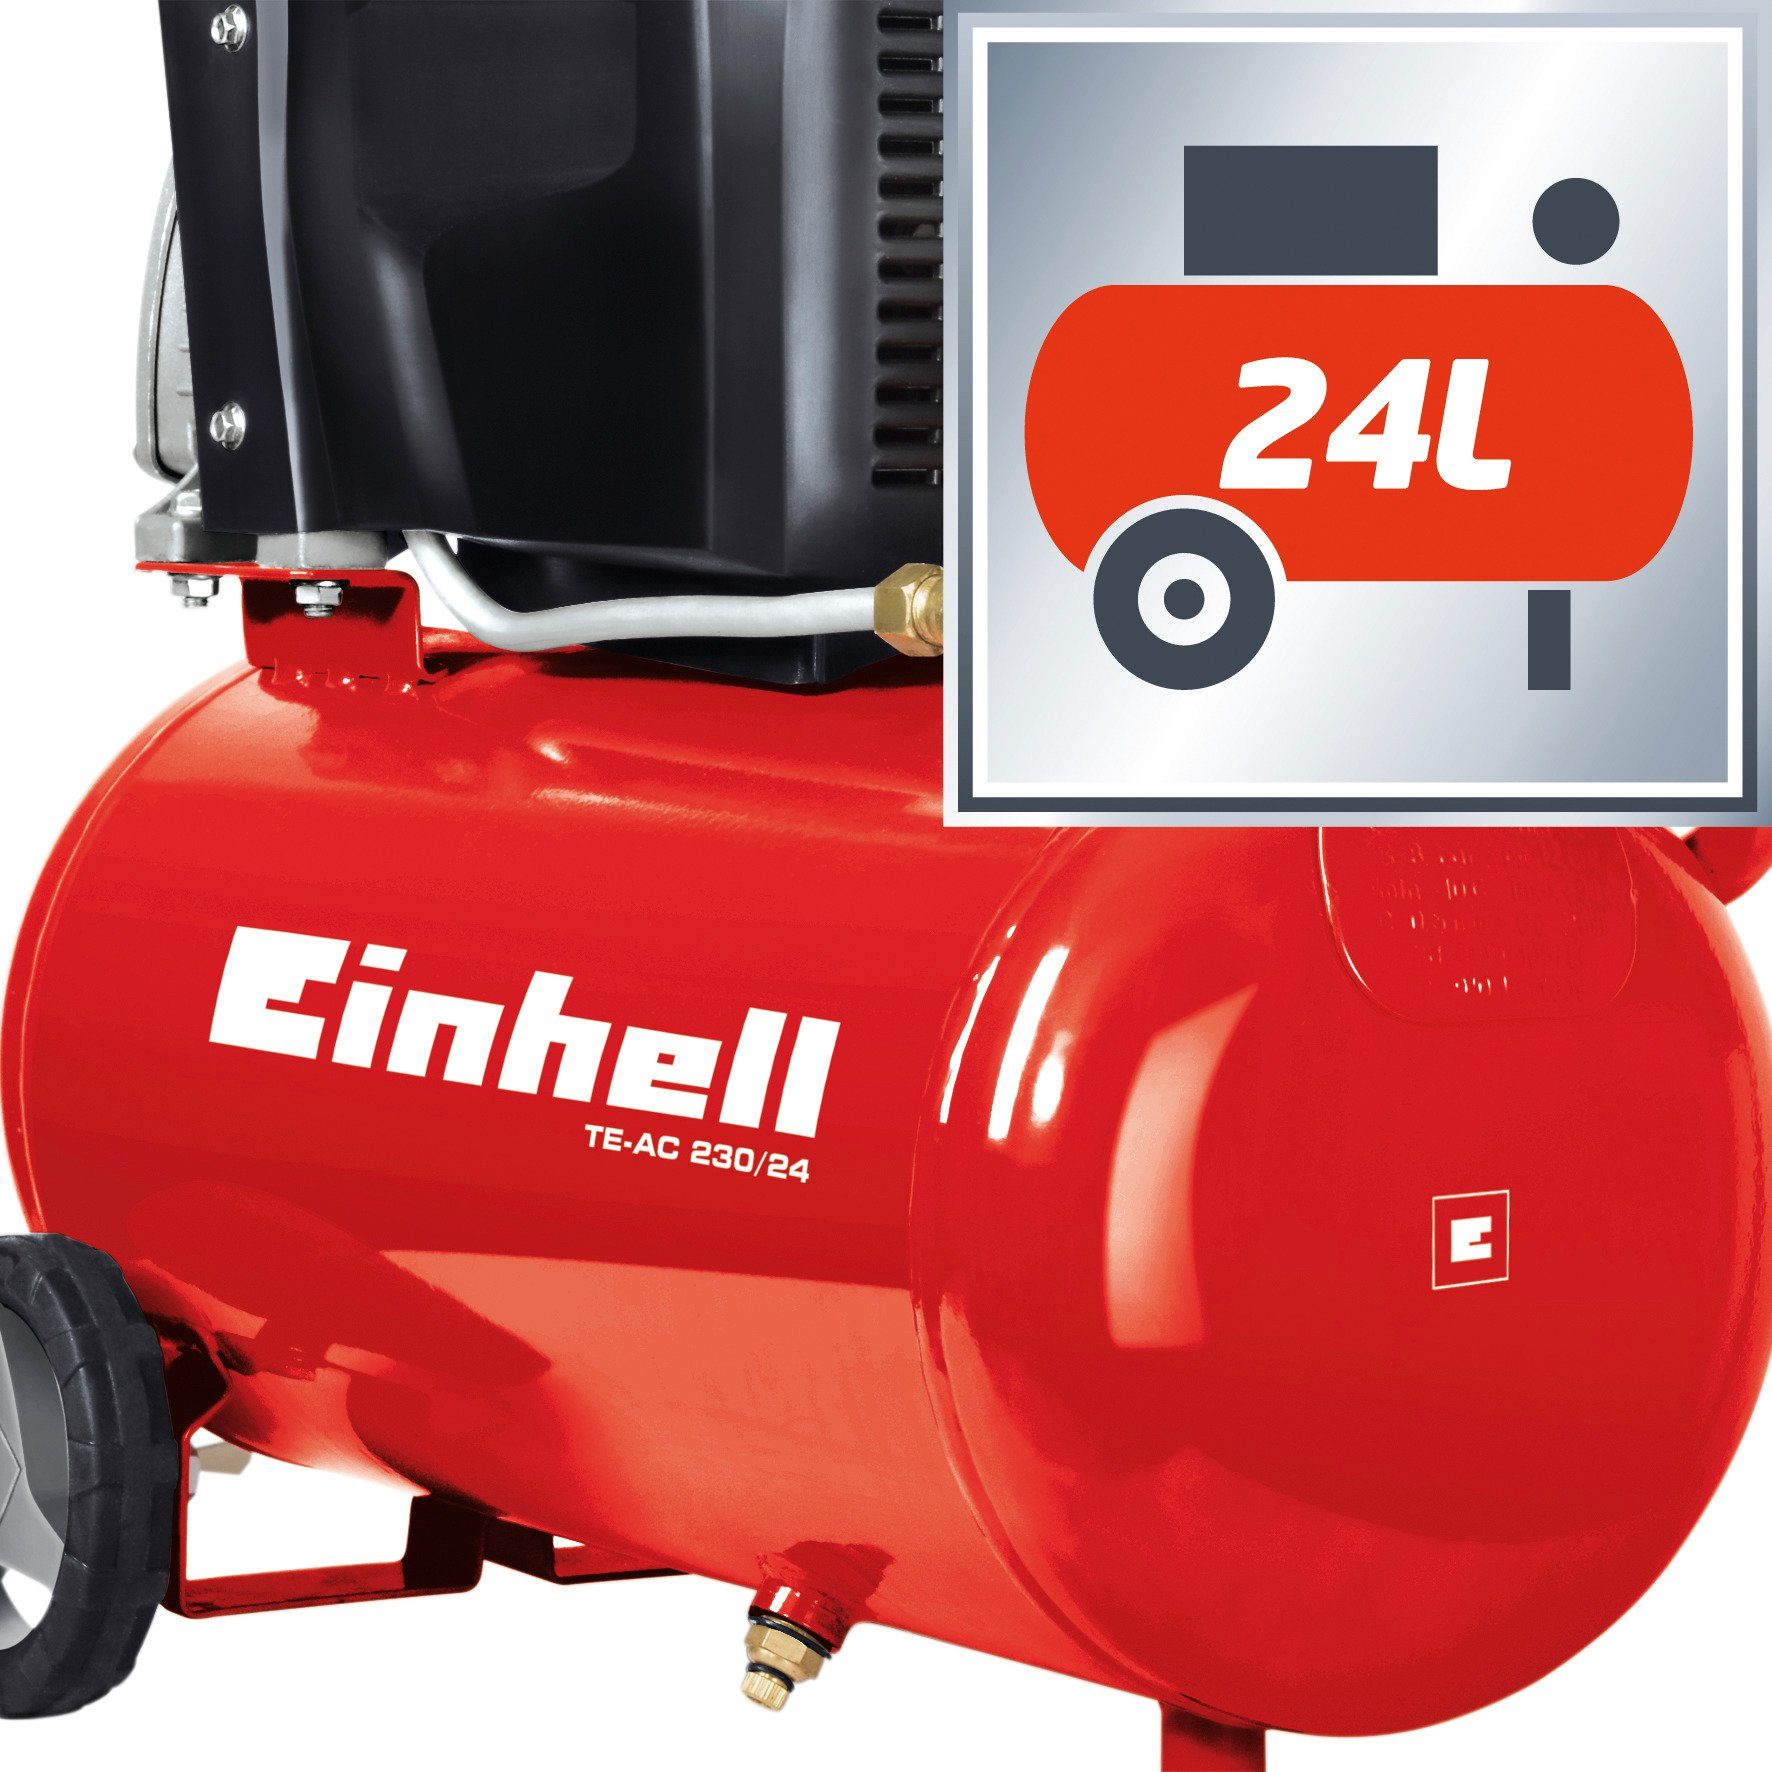 Einhell Kompressor TE-AC 8 24 max. l W, 1500 230/24, bar